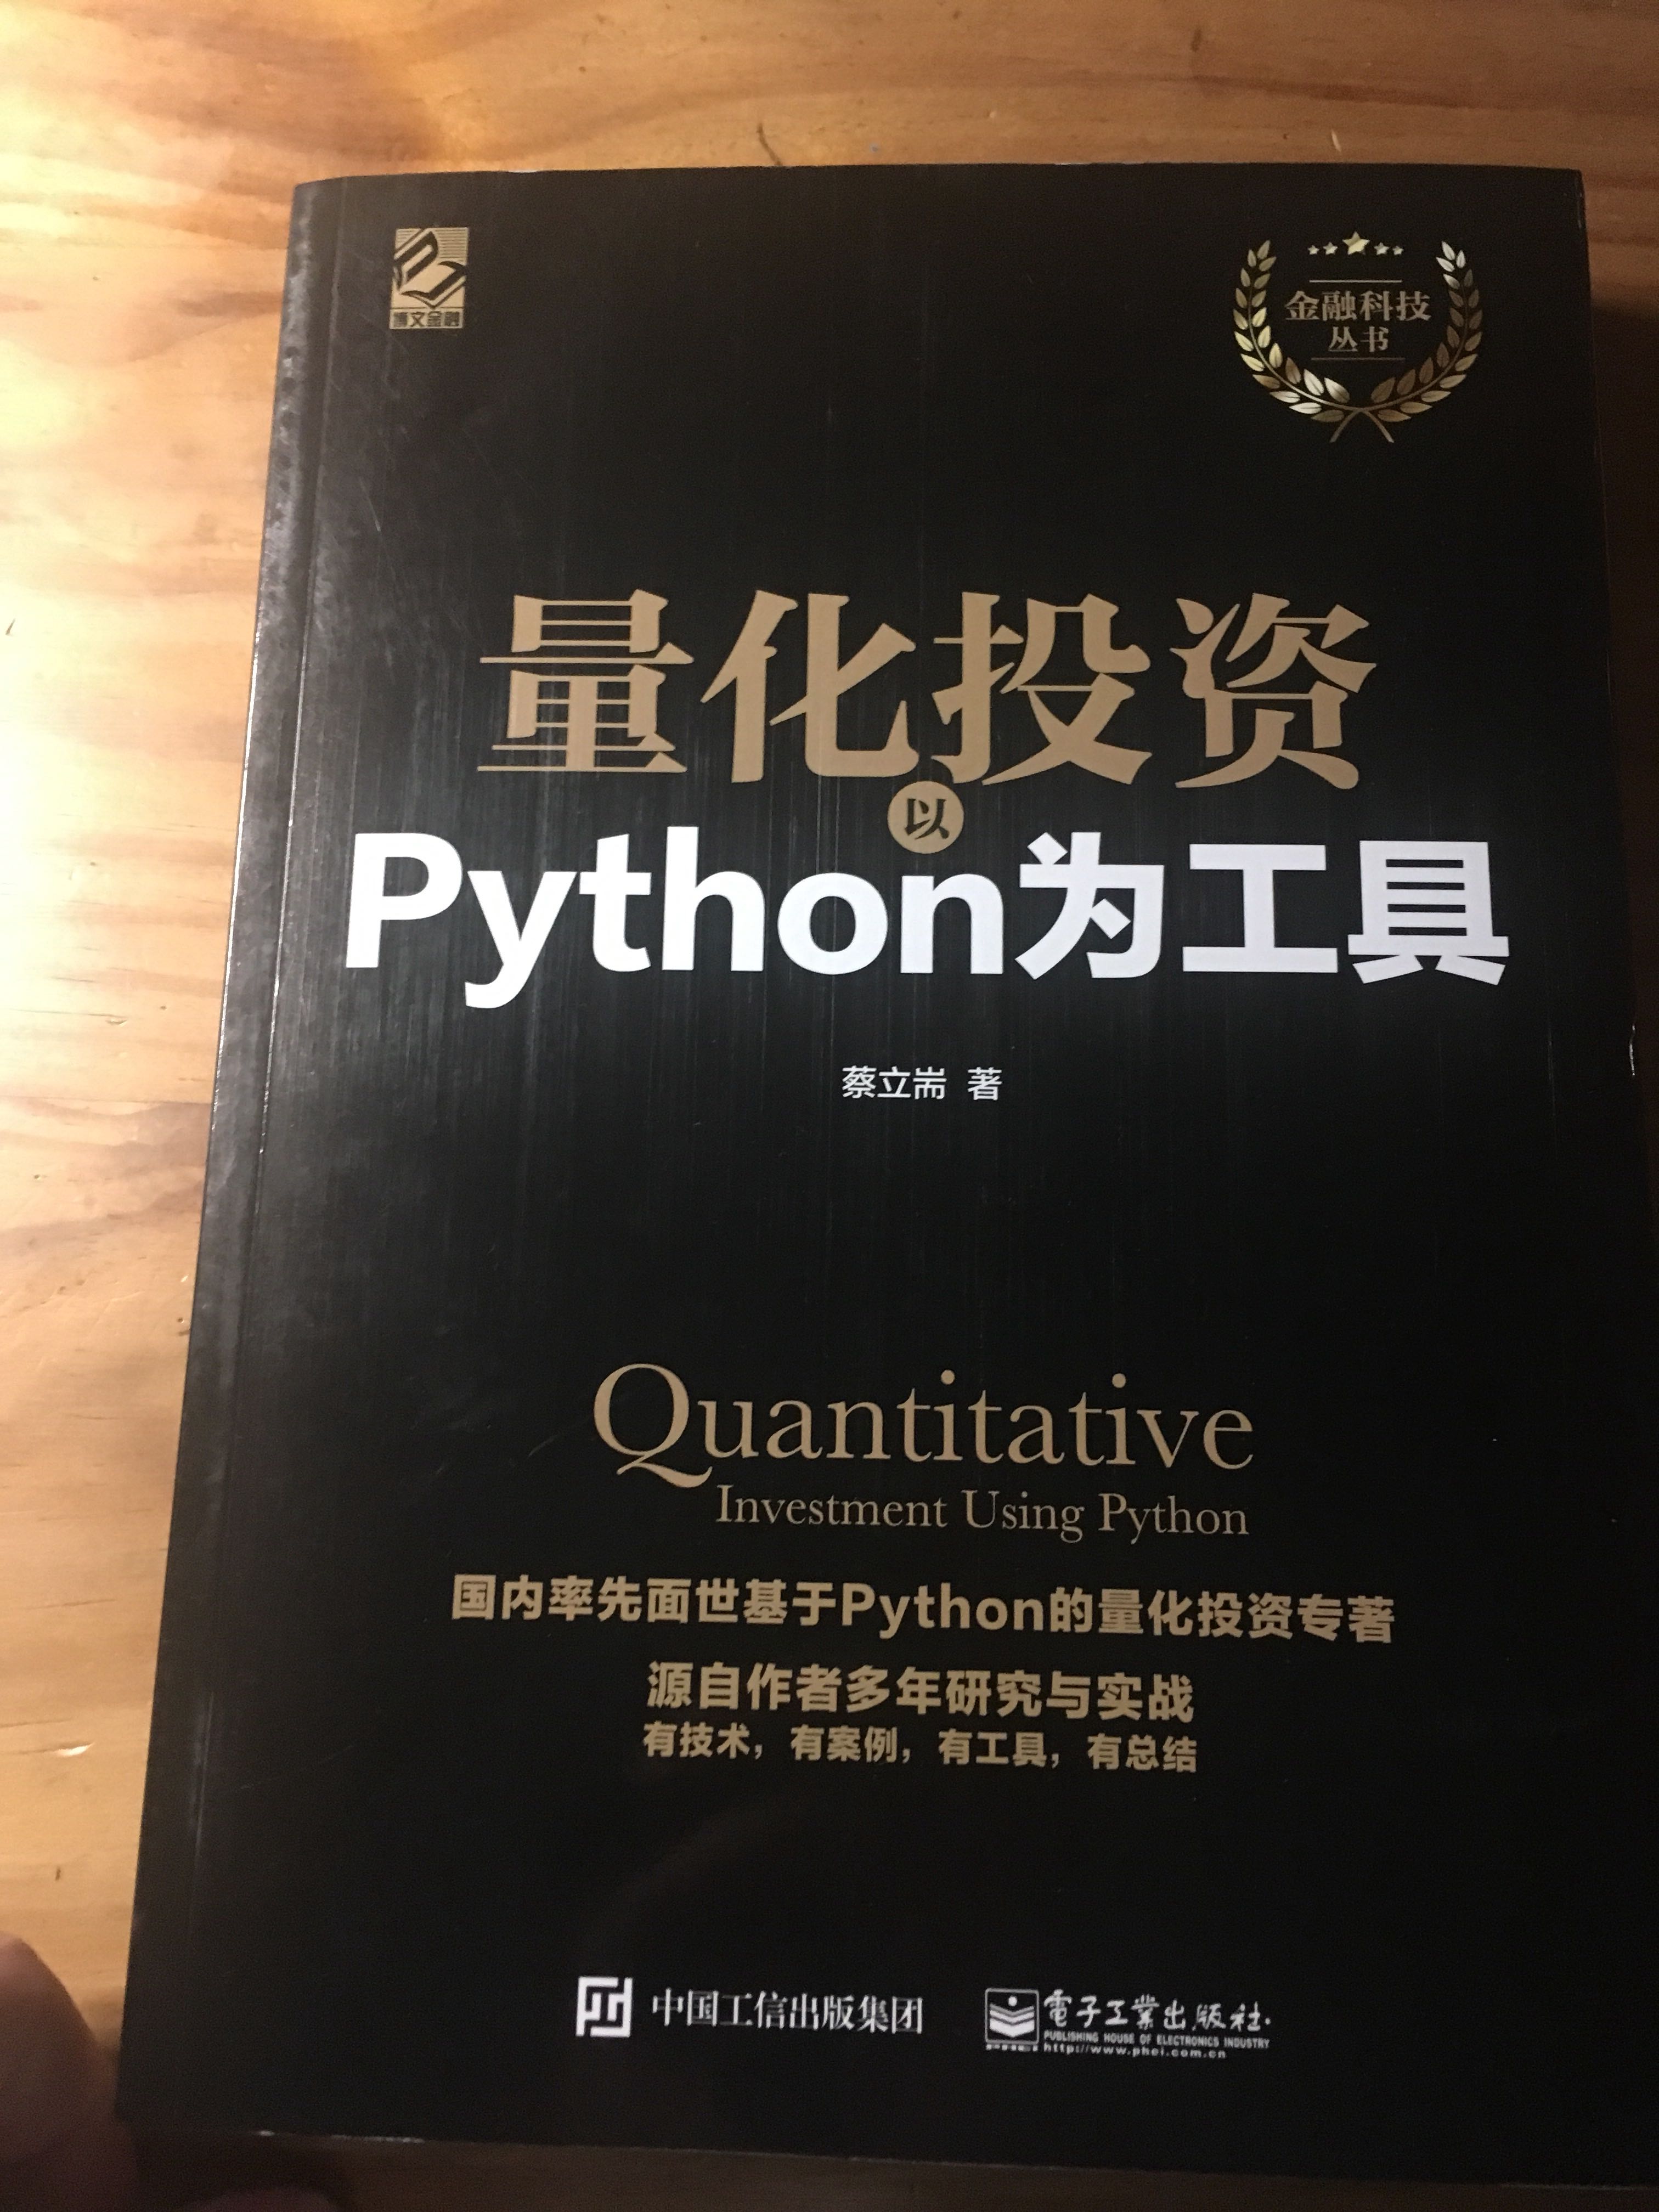 详细介绍python在量化投资方面的的应用和工具基础。